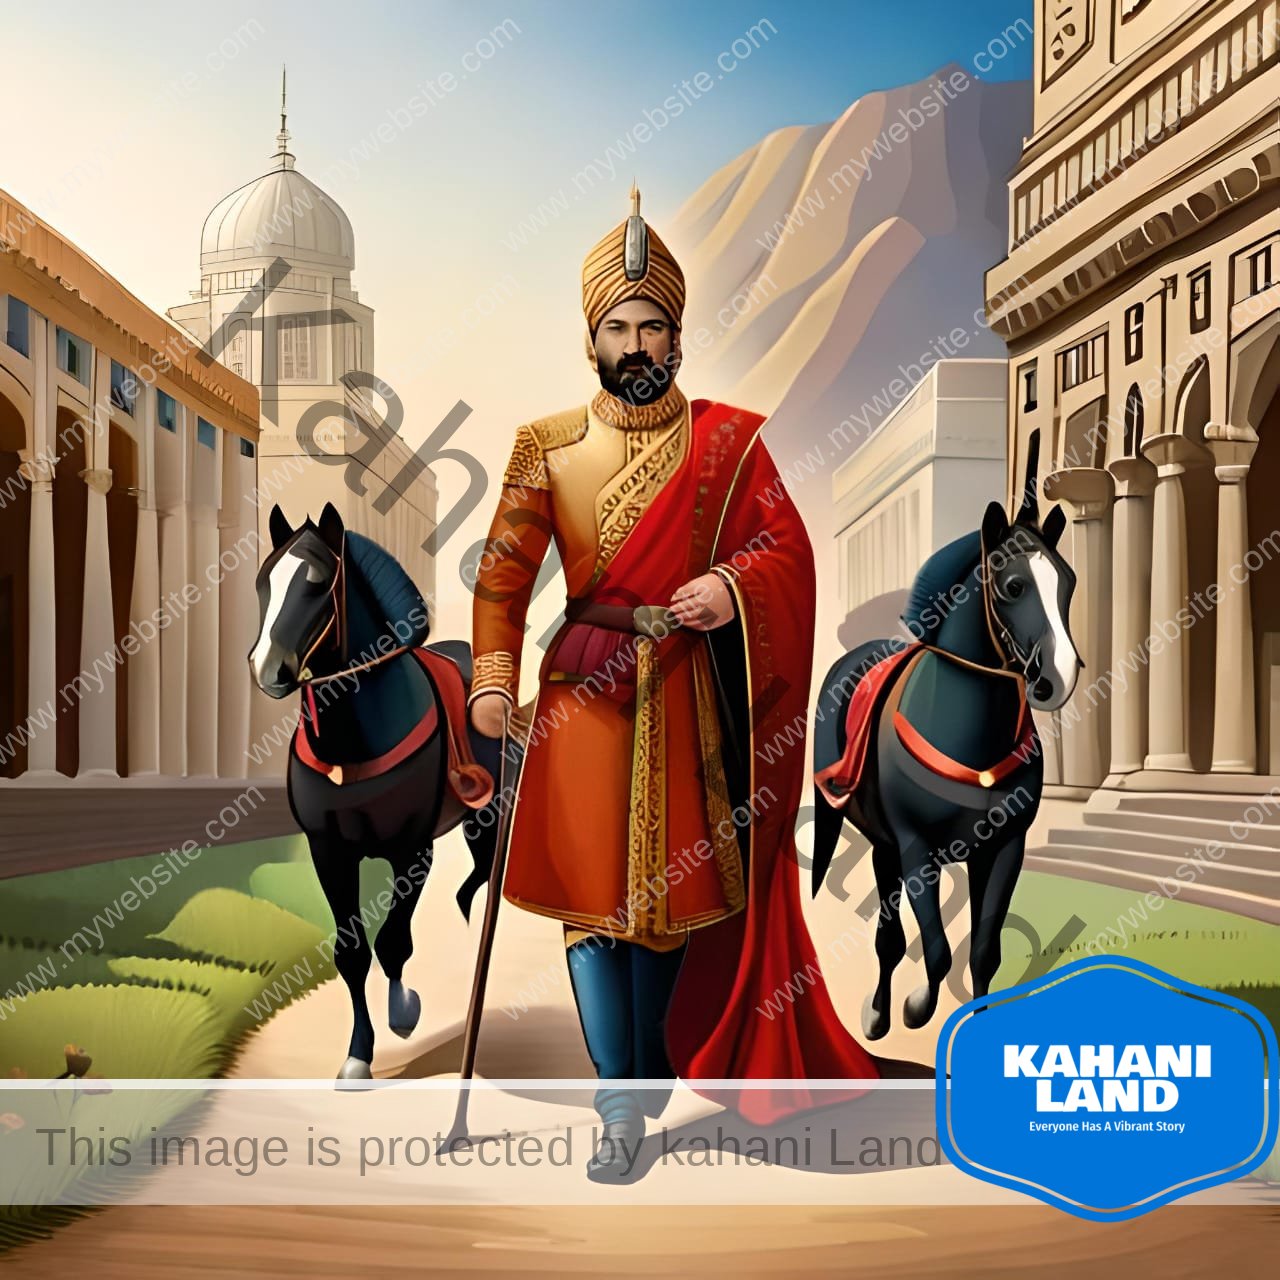 यह असली मालिक कौन ? कहानी के एक द्रासी को दर्शाता है जिसमे बीरबल के द्वारा छोड़ गया घोडा राज्य रवि वर्मा के पीछे चलने लगता है ।